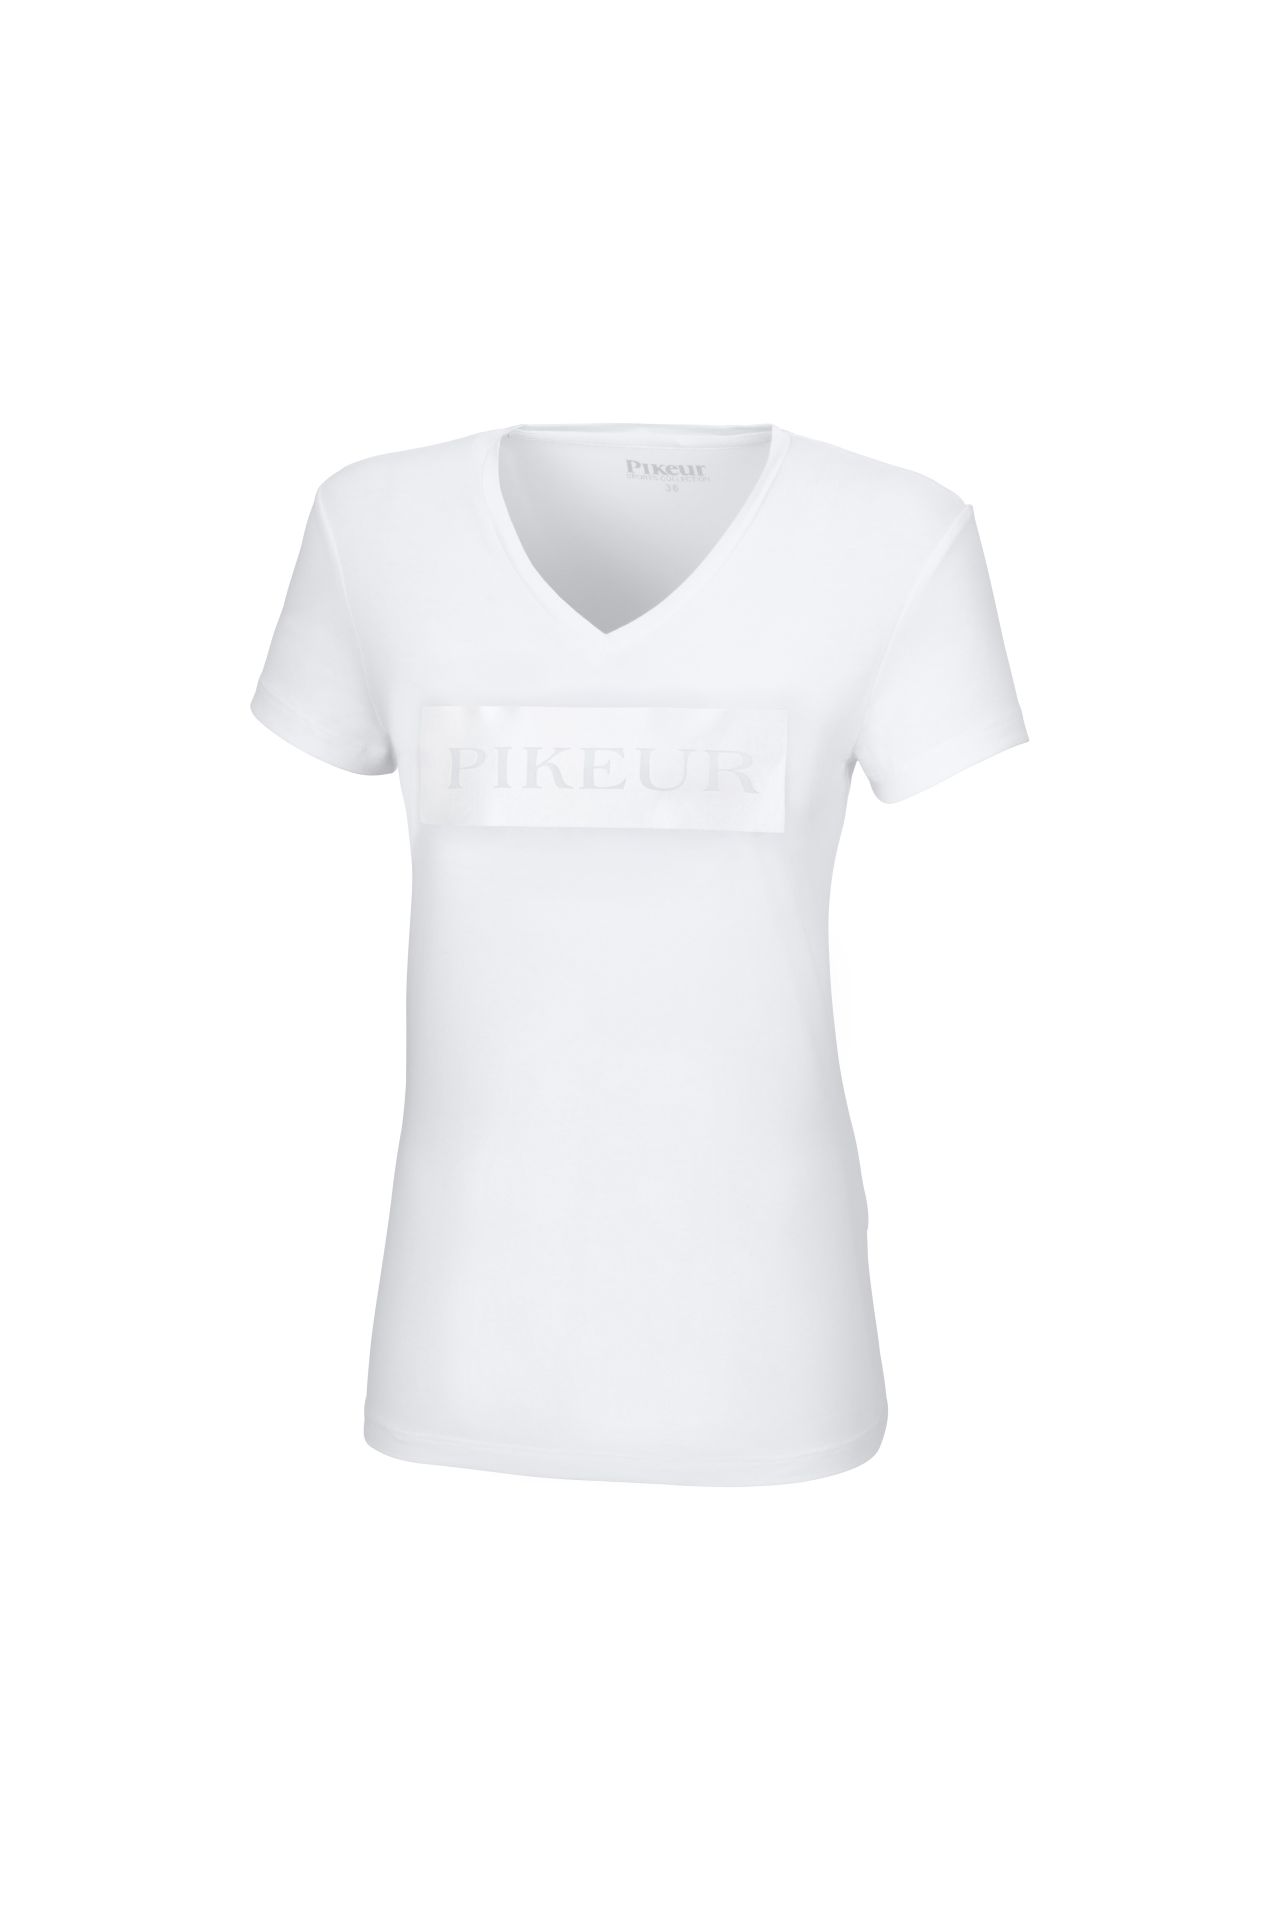 Pikeur FRANJA Shirt, White